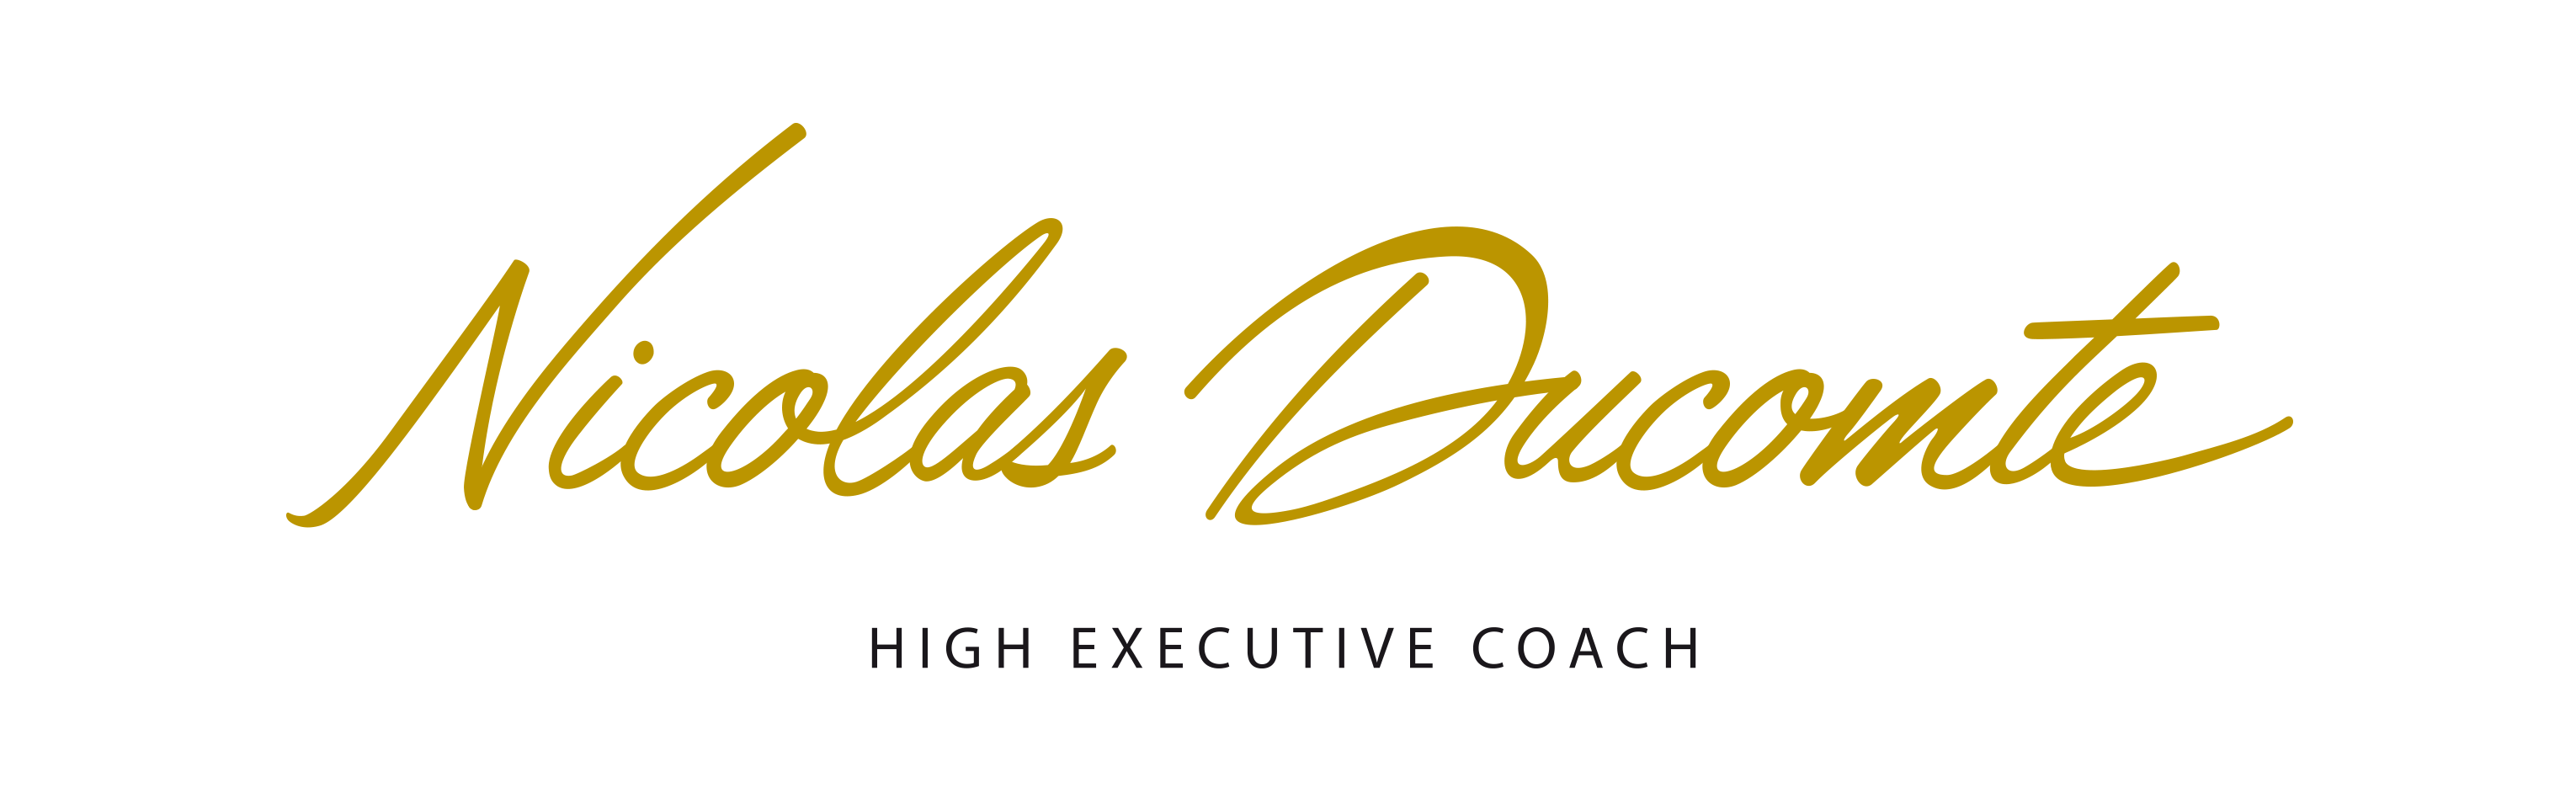 Nicolas DUCOMTE High Executive Coach